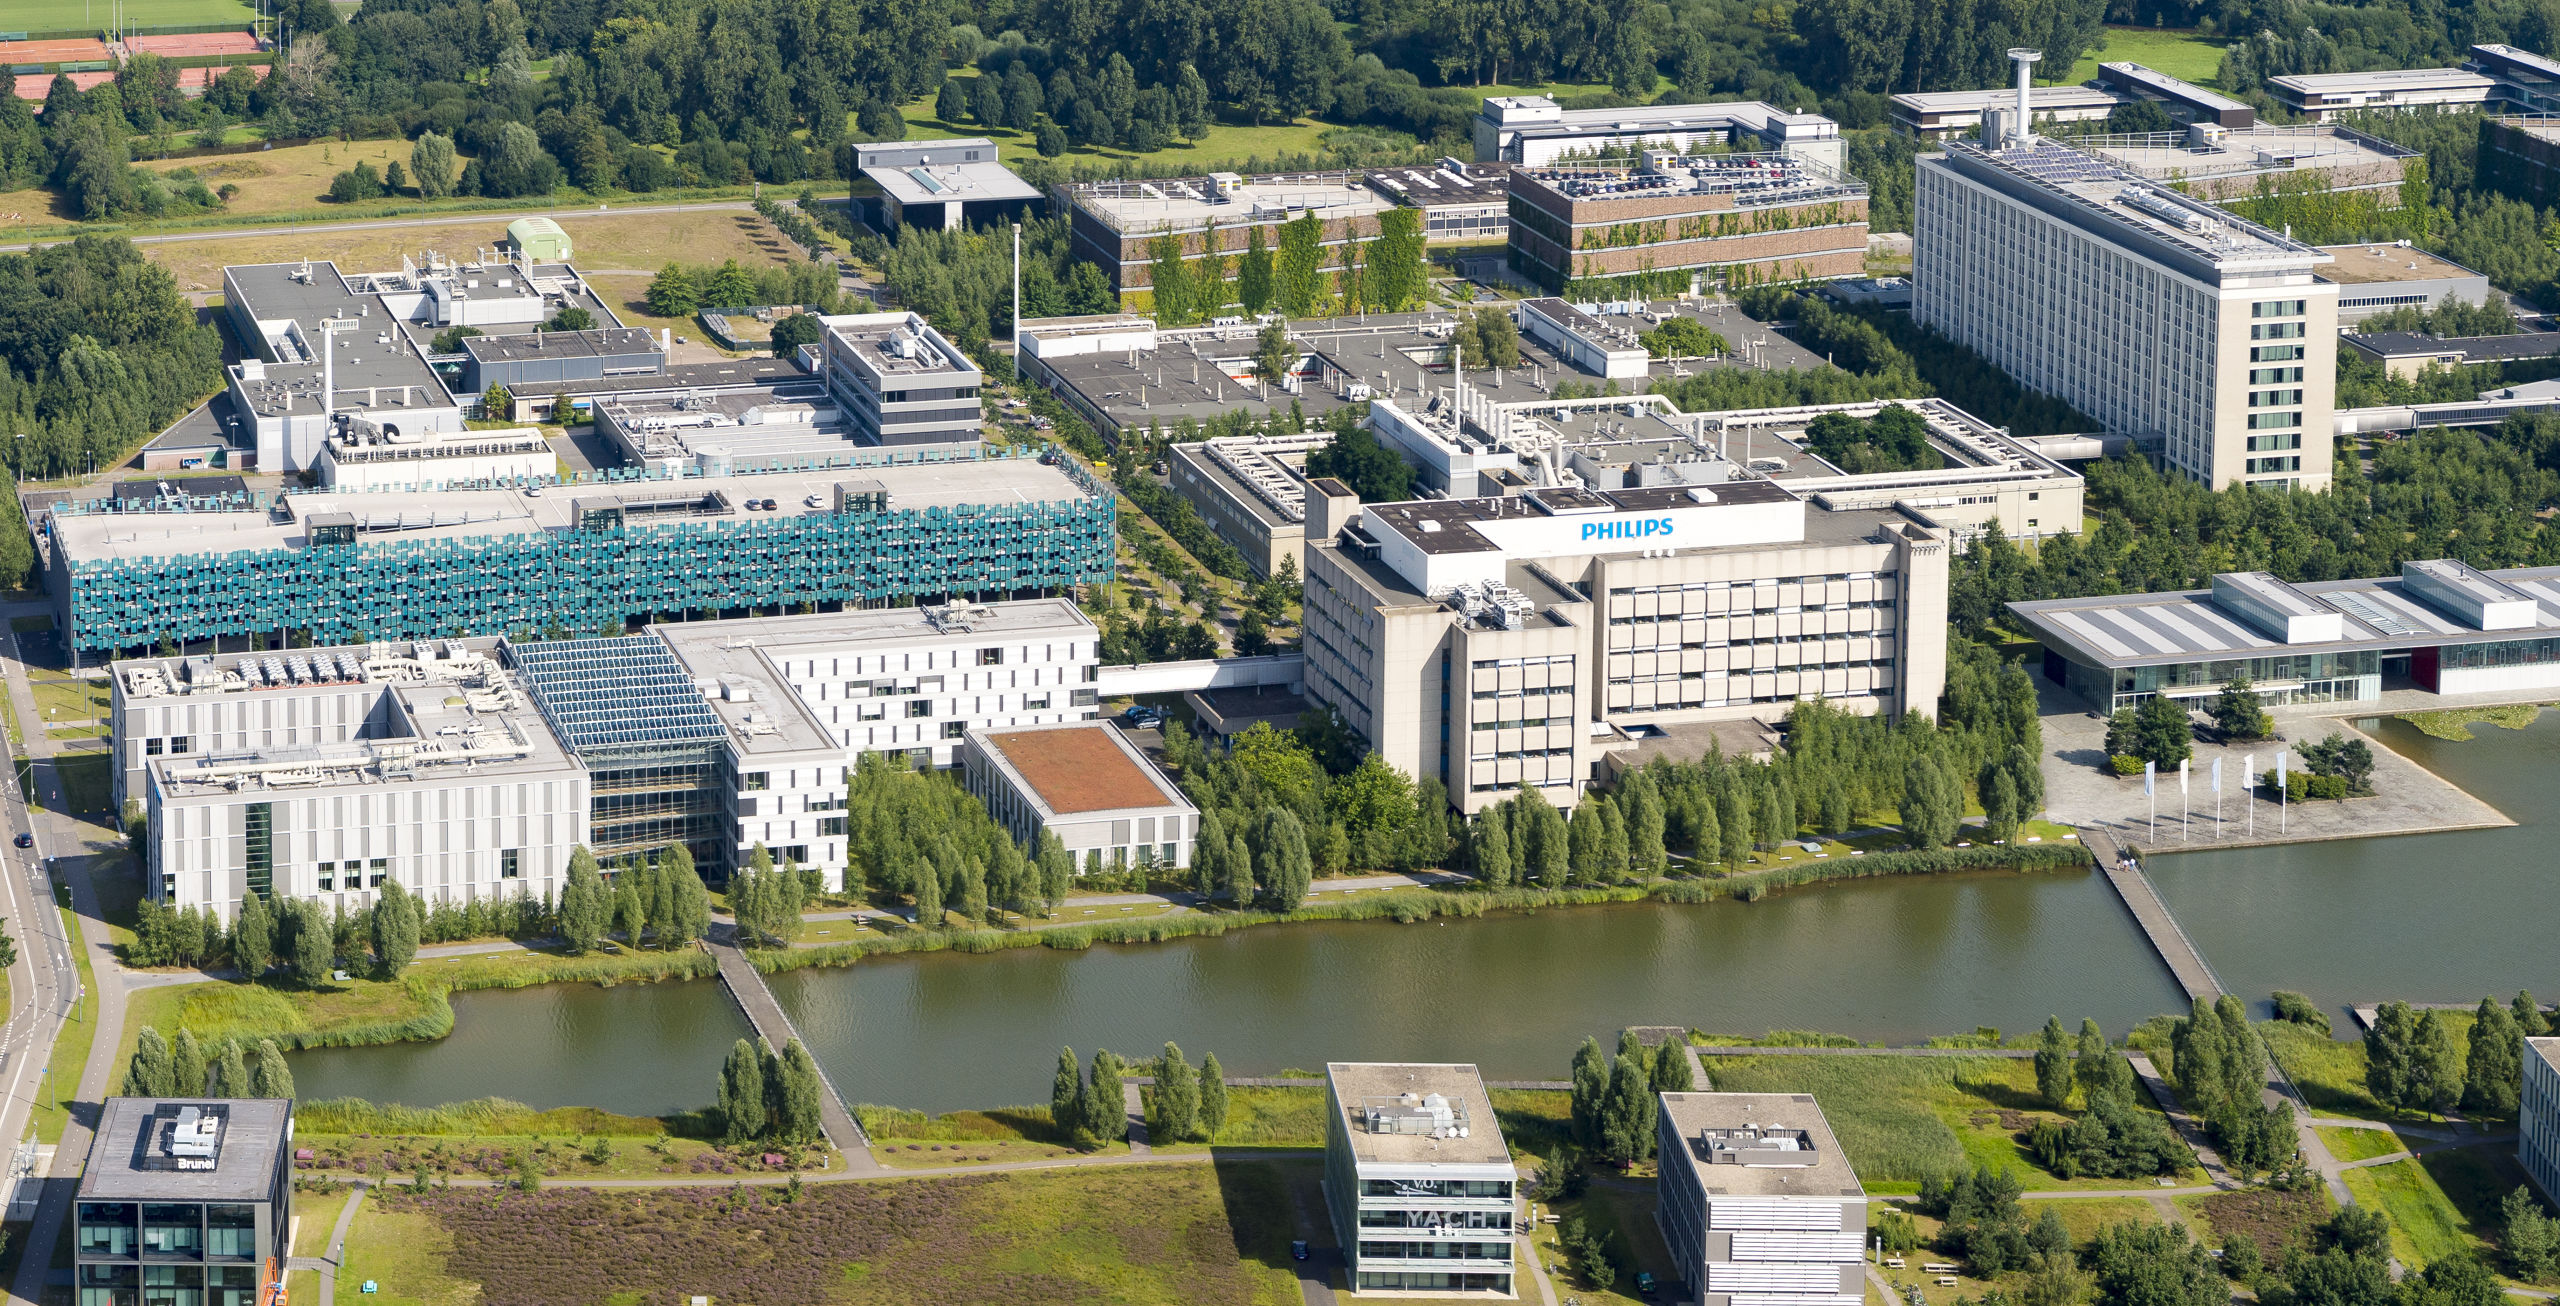 Luchtfoto van de campus van Philips in Eindhoven, de TU Eindhoven speelt een grote rol in de groei van de industrie in Noord-Brabant.